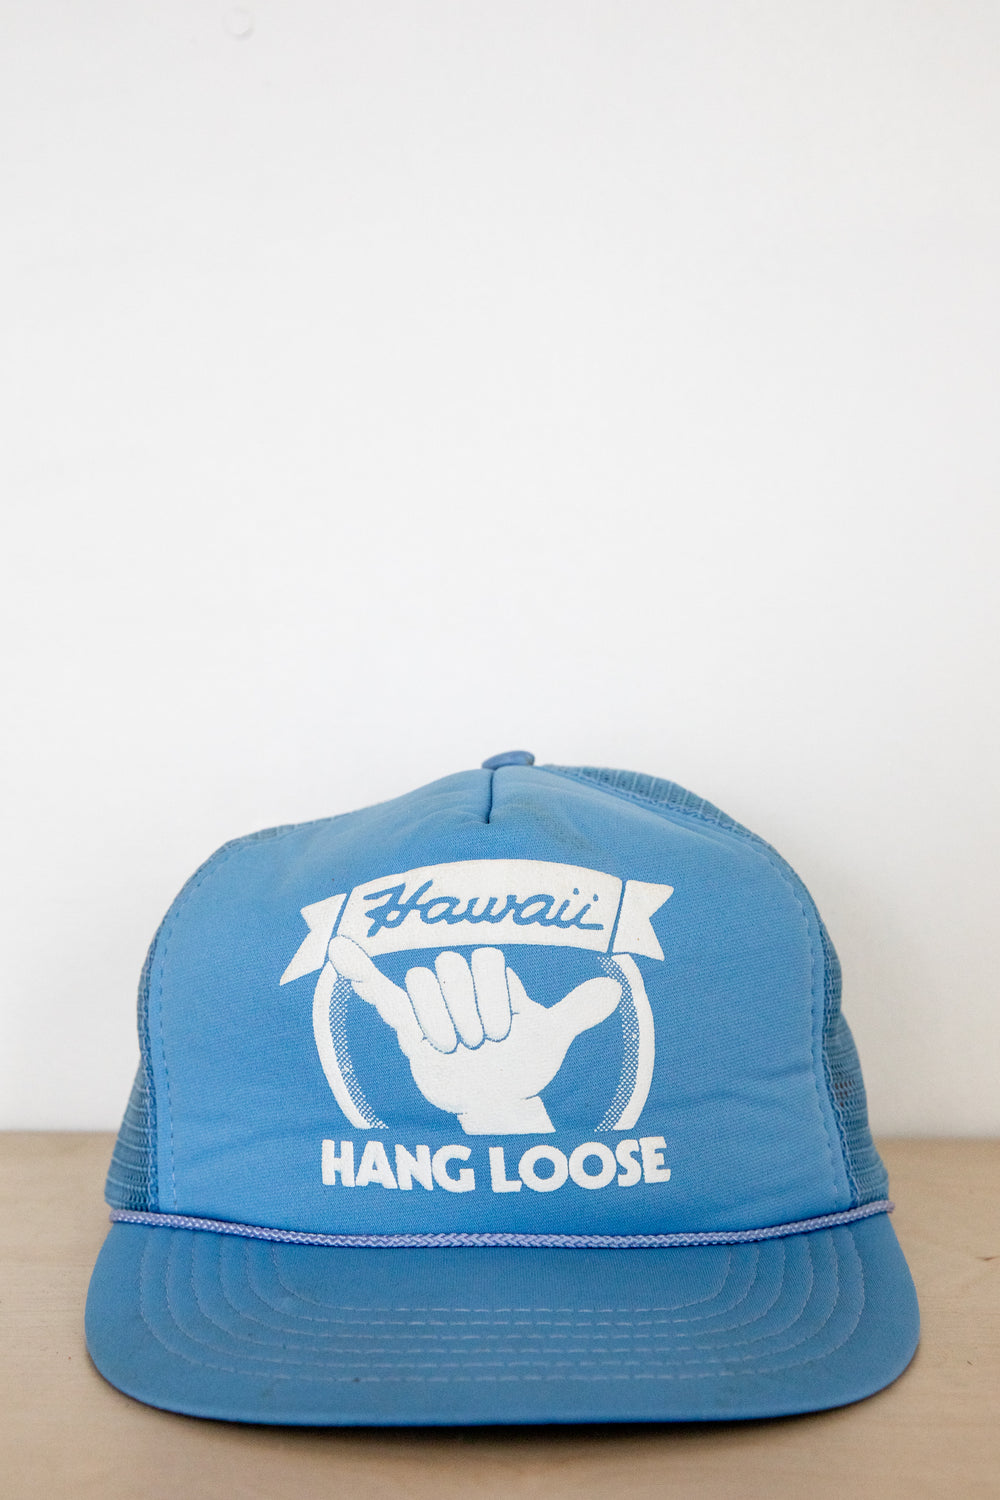 Hawaii Hang Loose Hat